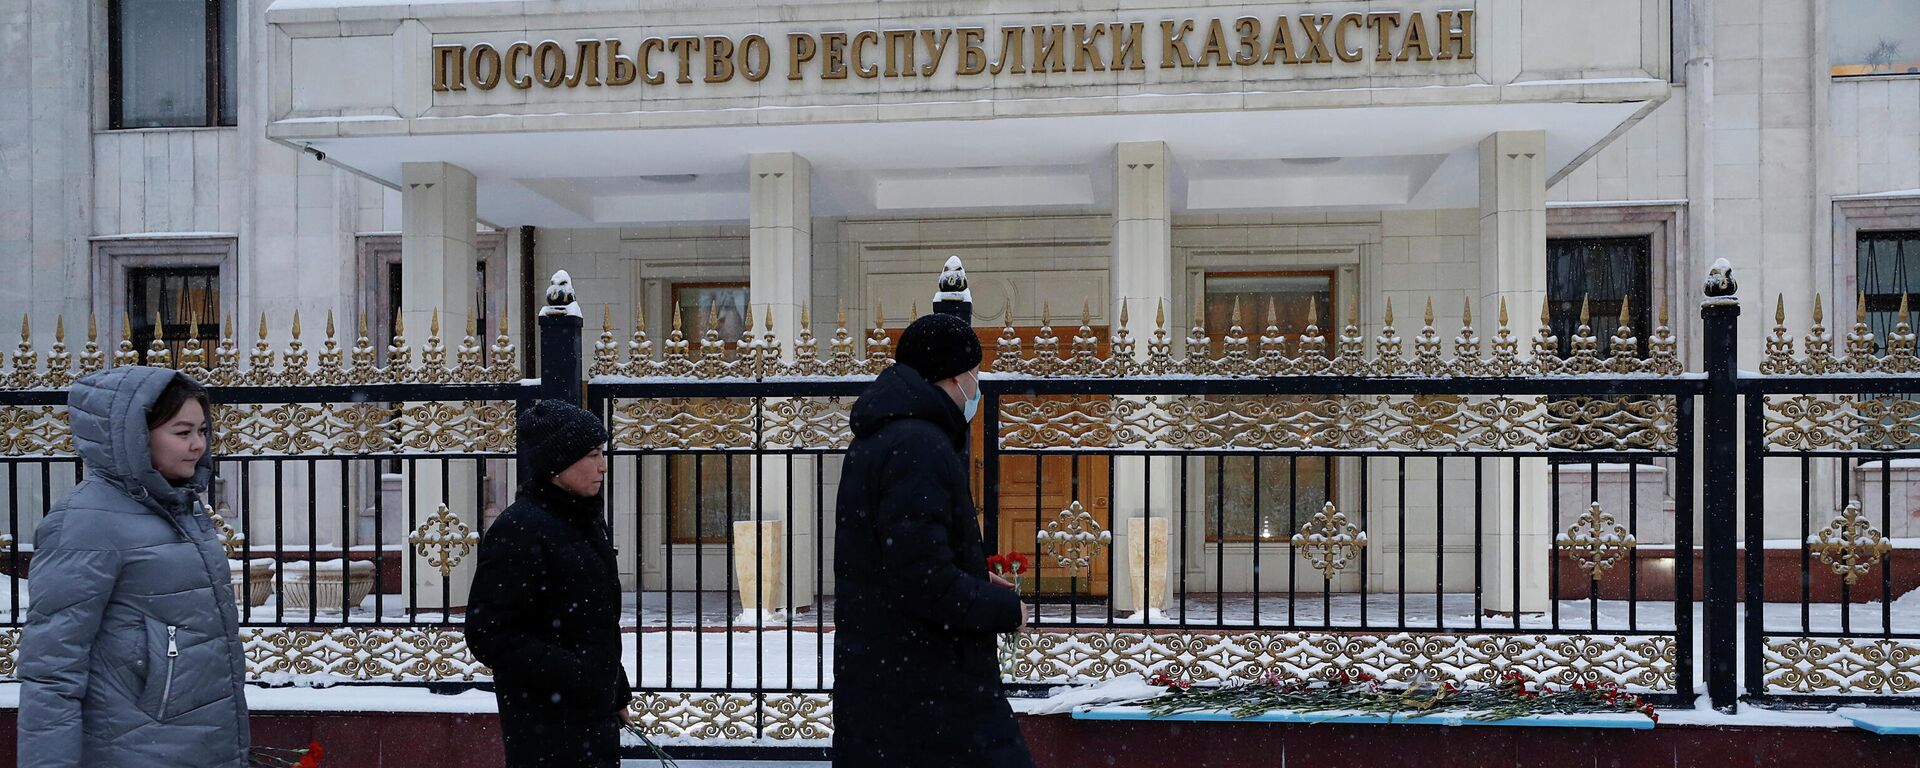 La situación en Kazajistán tras las protestas, el 10 de enero de 2022 - Sputnik Mundo, 1920, 10.01.2022